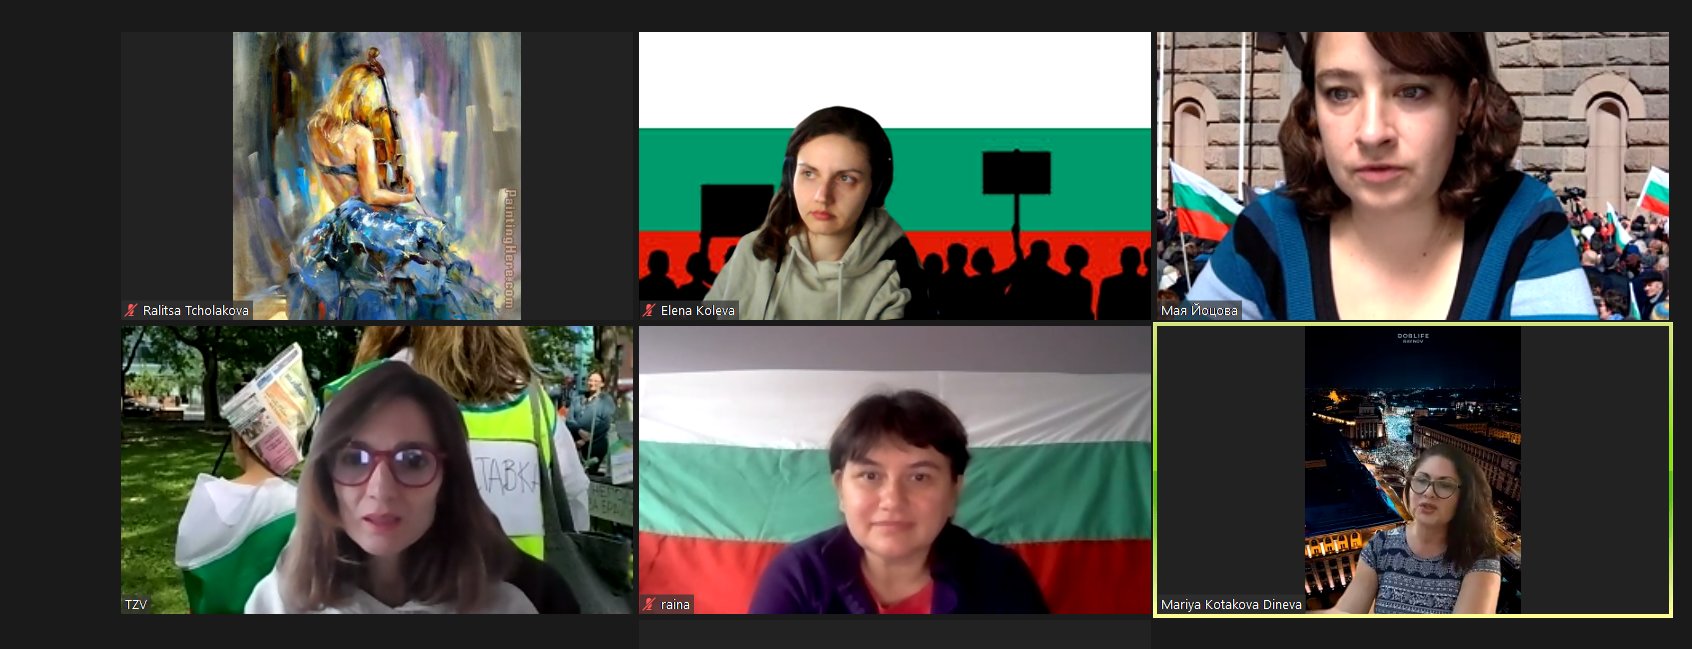 Група българи живеещи в Канада се събраха онлайн за да